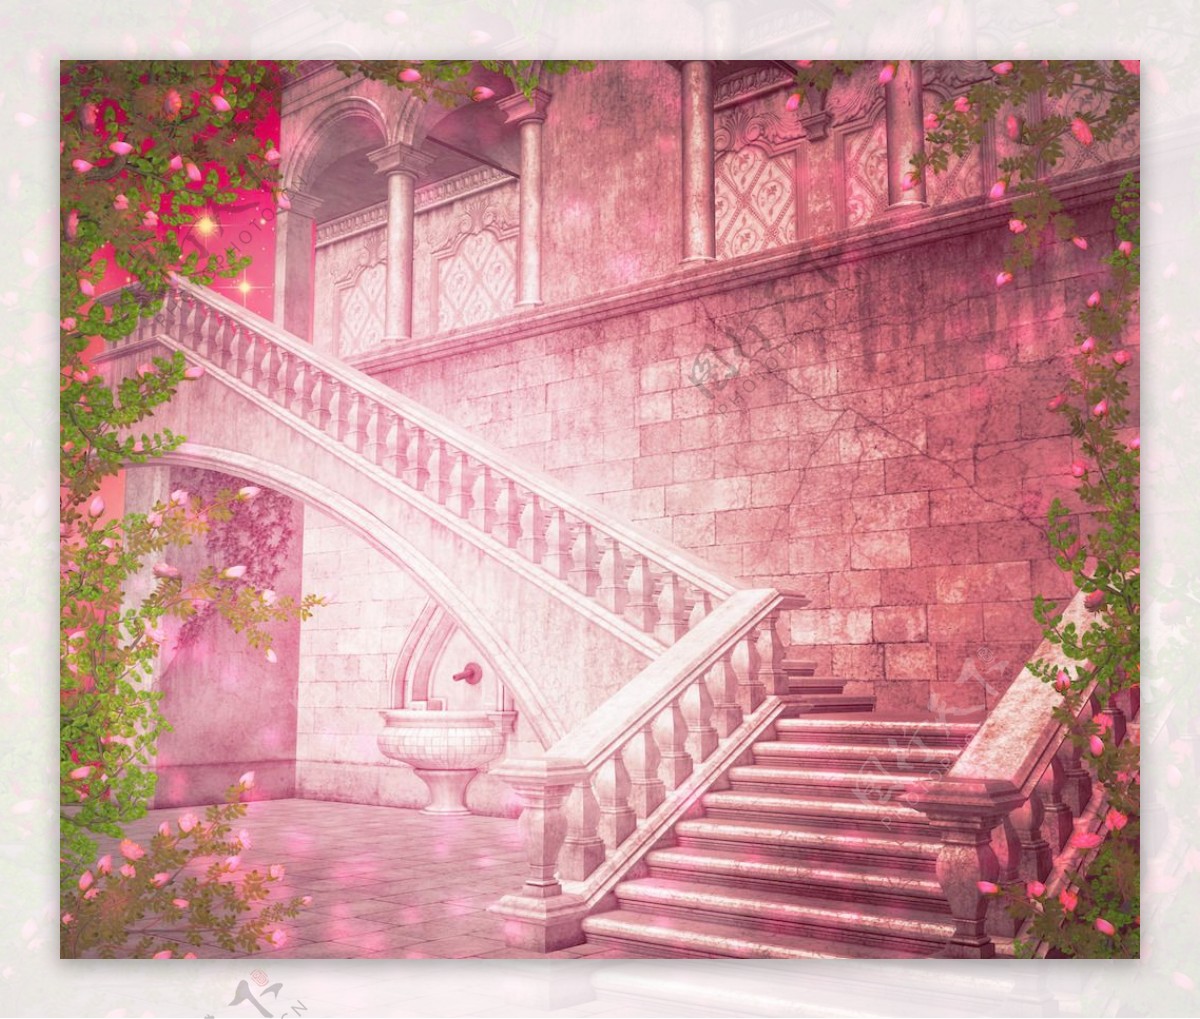 粉红色的城堡内的幻想的背景